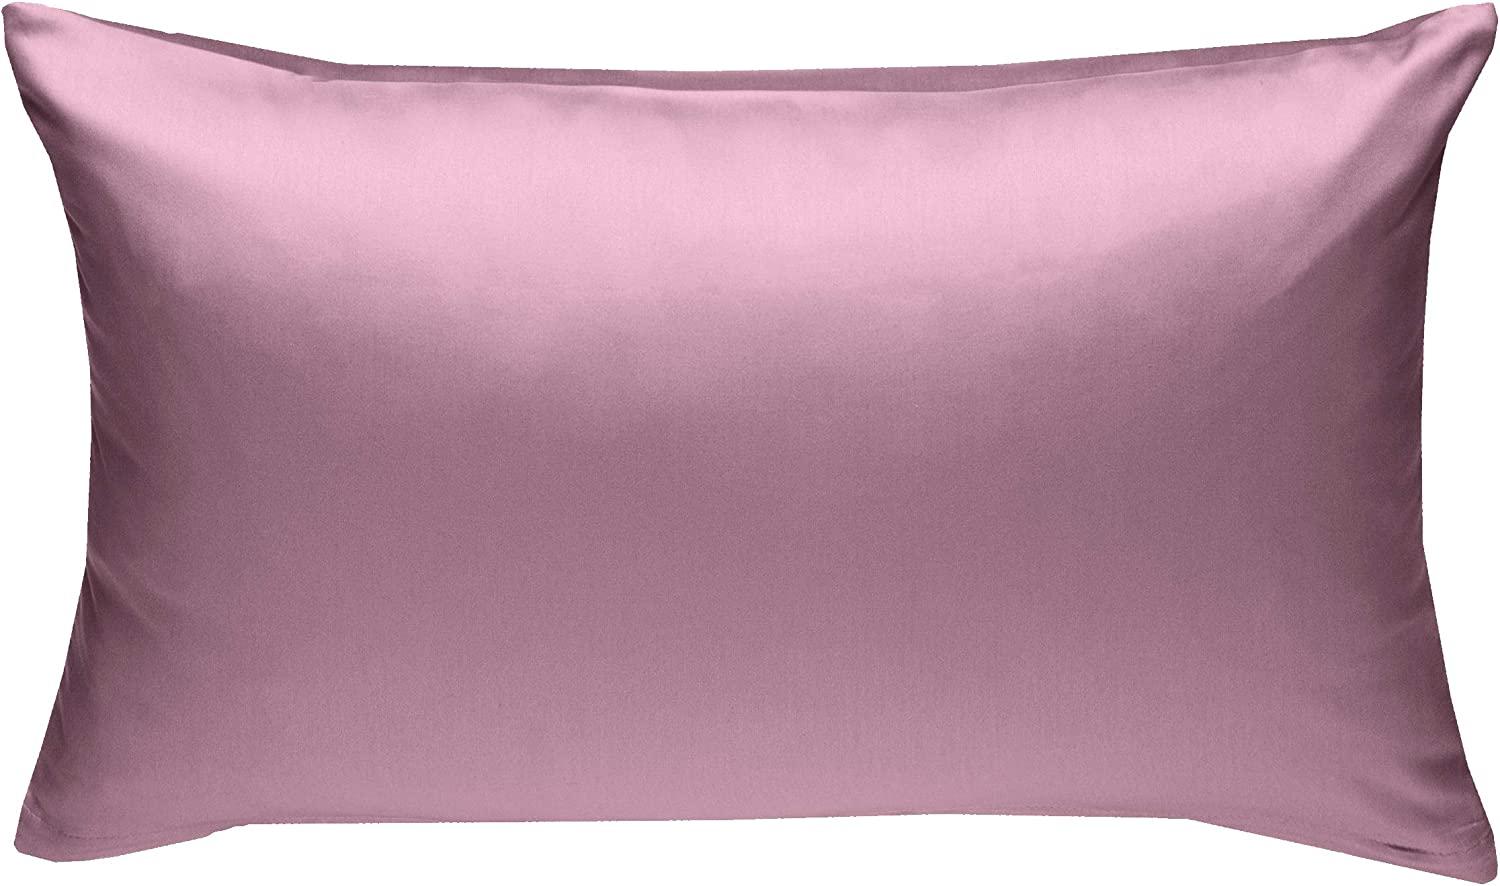 Bettwaesche-mit-Stil Mako-Satin / Baumwollsatin Bettwäsche uni / einfarbig rosa Kissenbezug 60x80 cm Bild 1